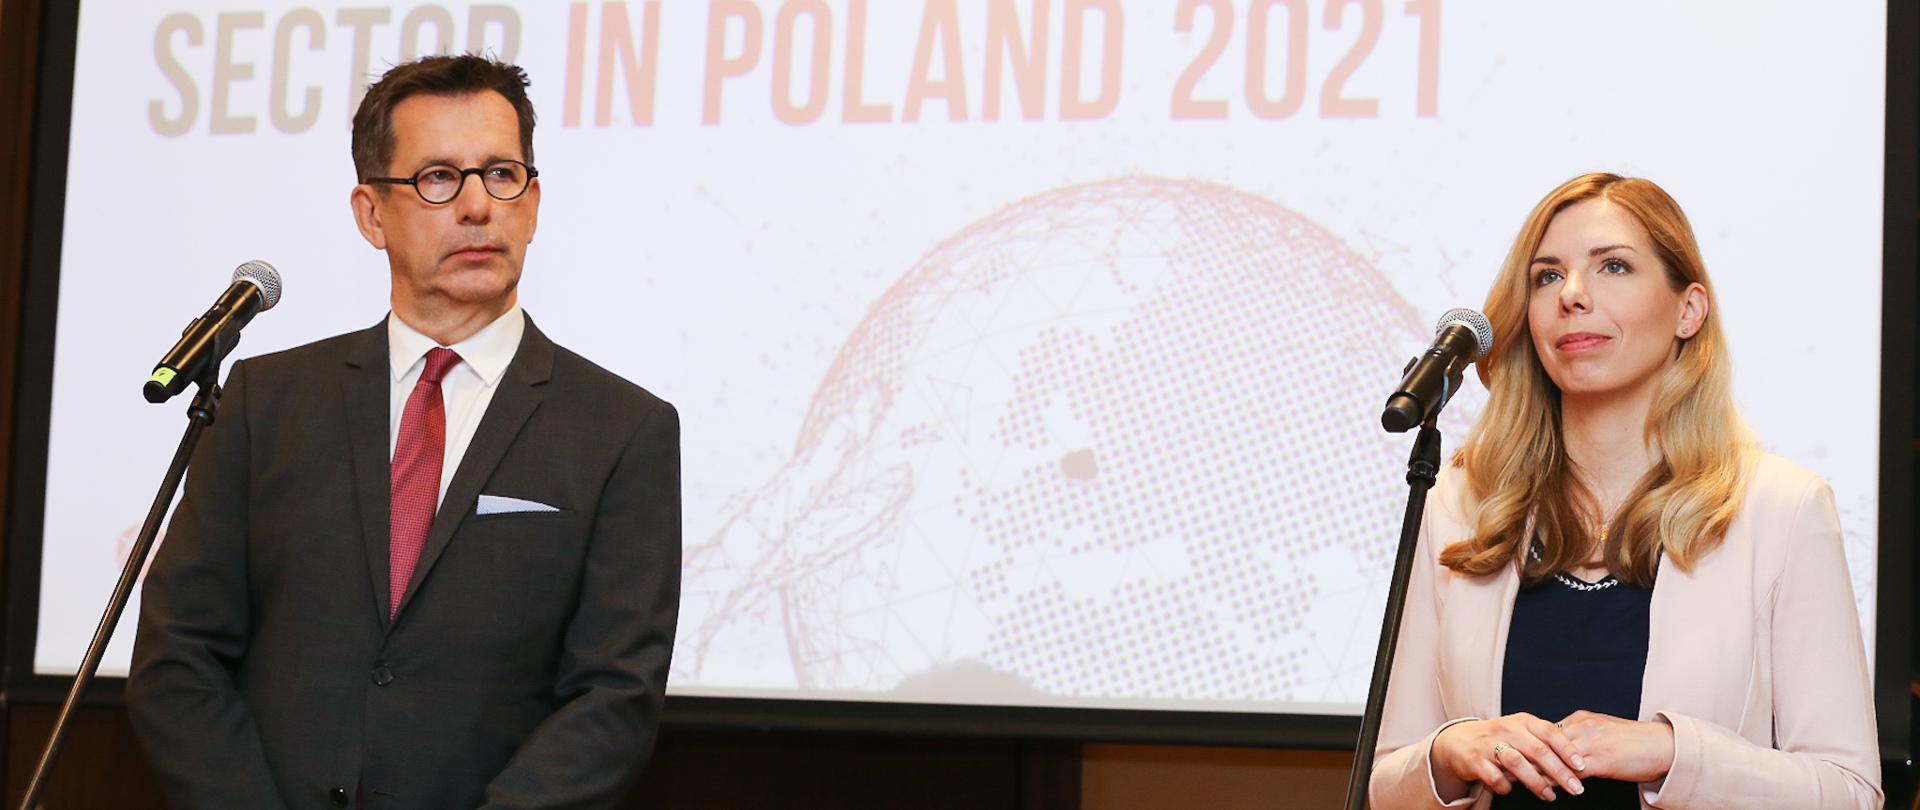 Wiceminister Anna Kornecka przemawia na tle ekranu podczas konferencji prasowej. Na ekranie widoczne logo wydarzenia.